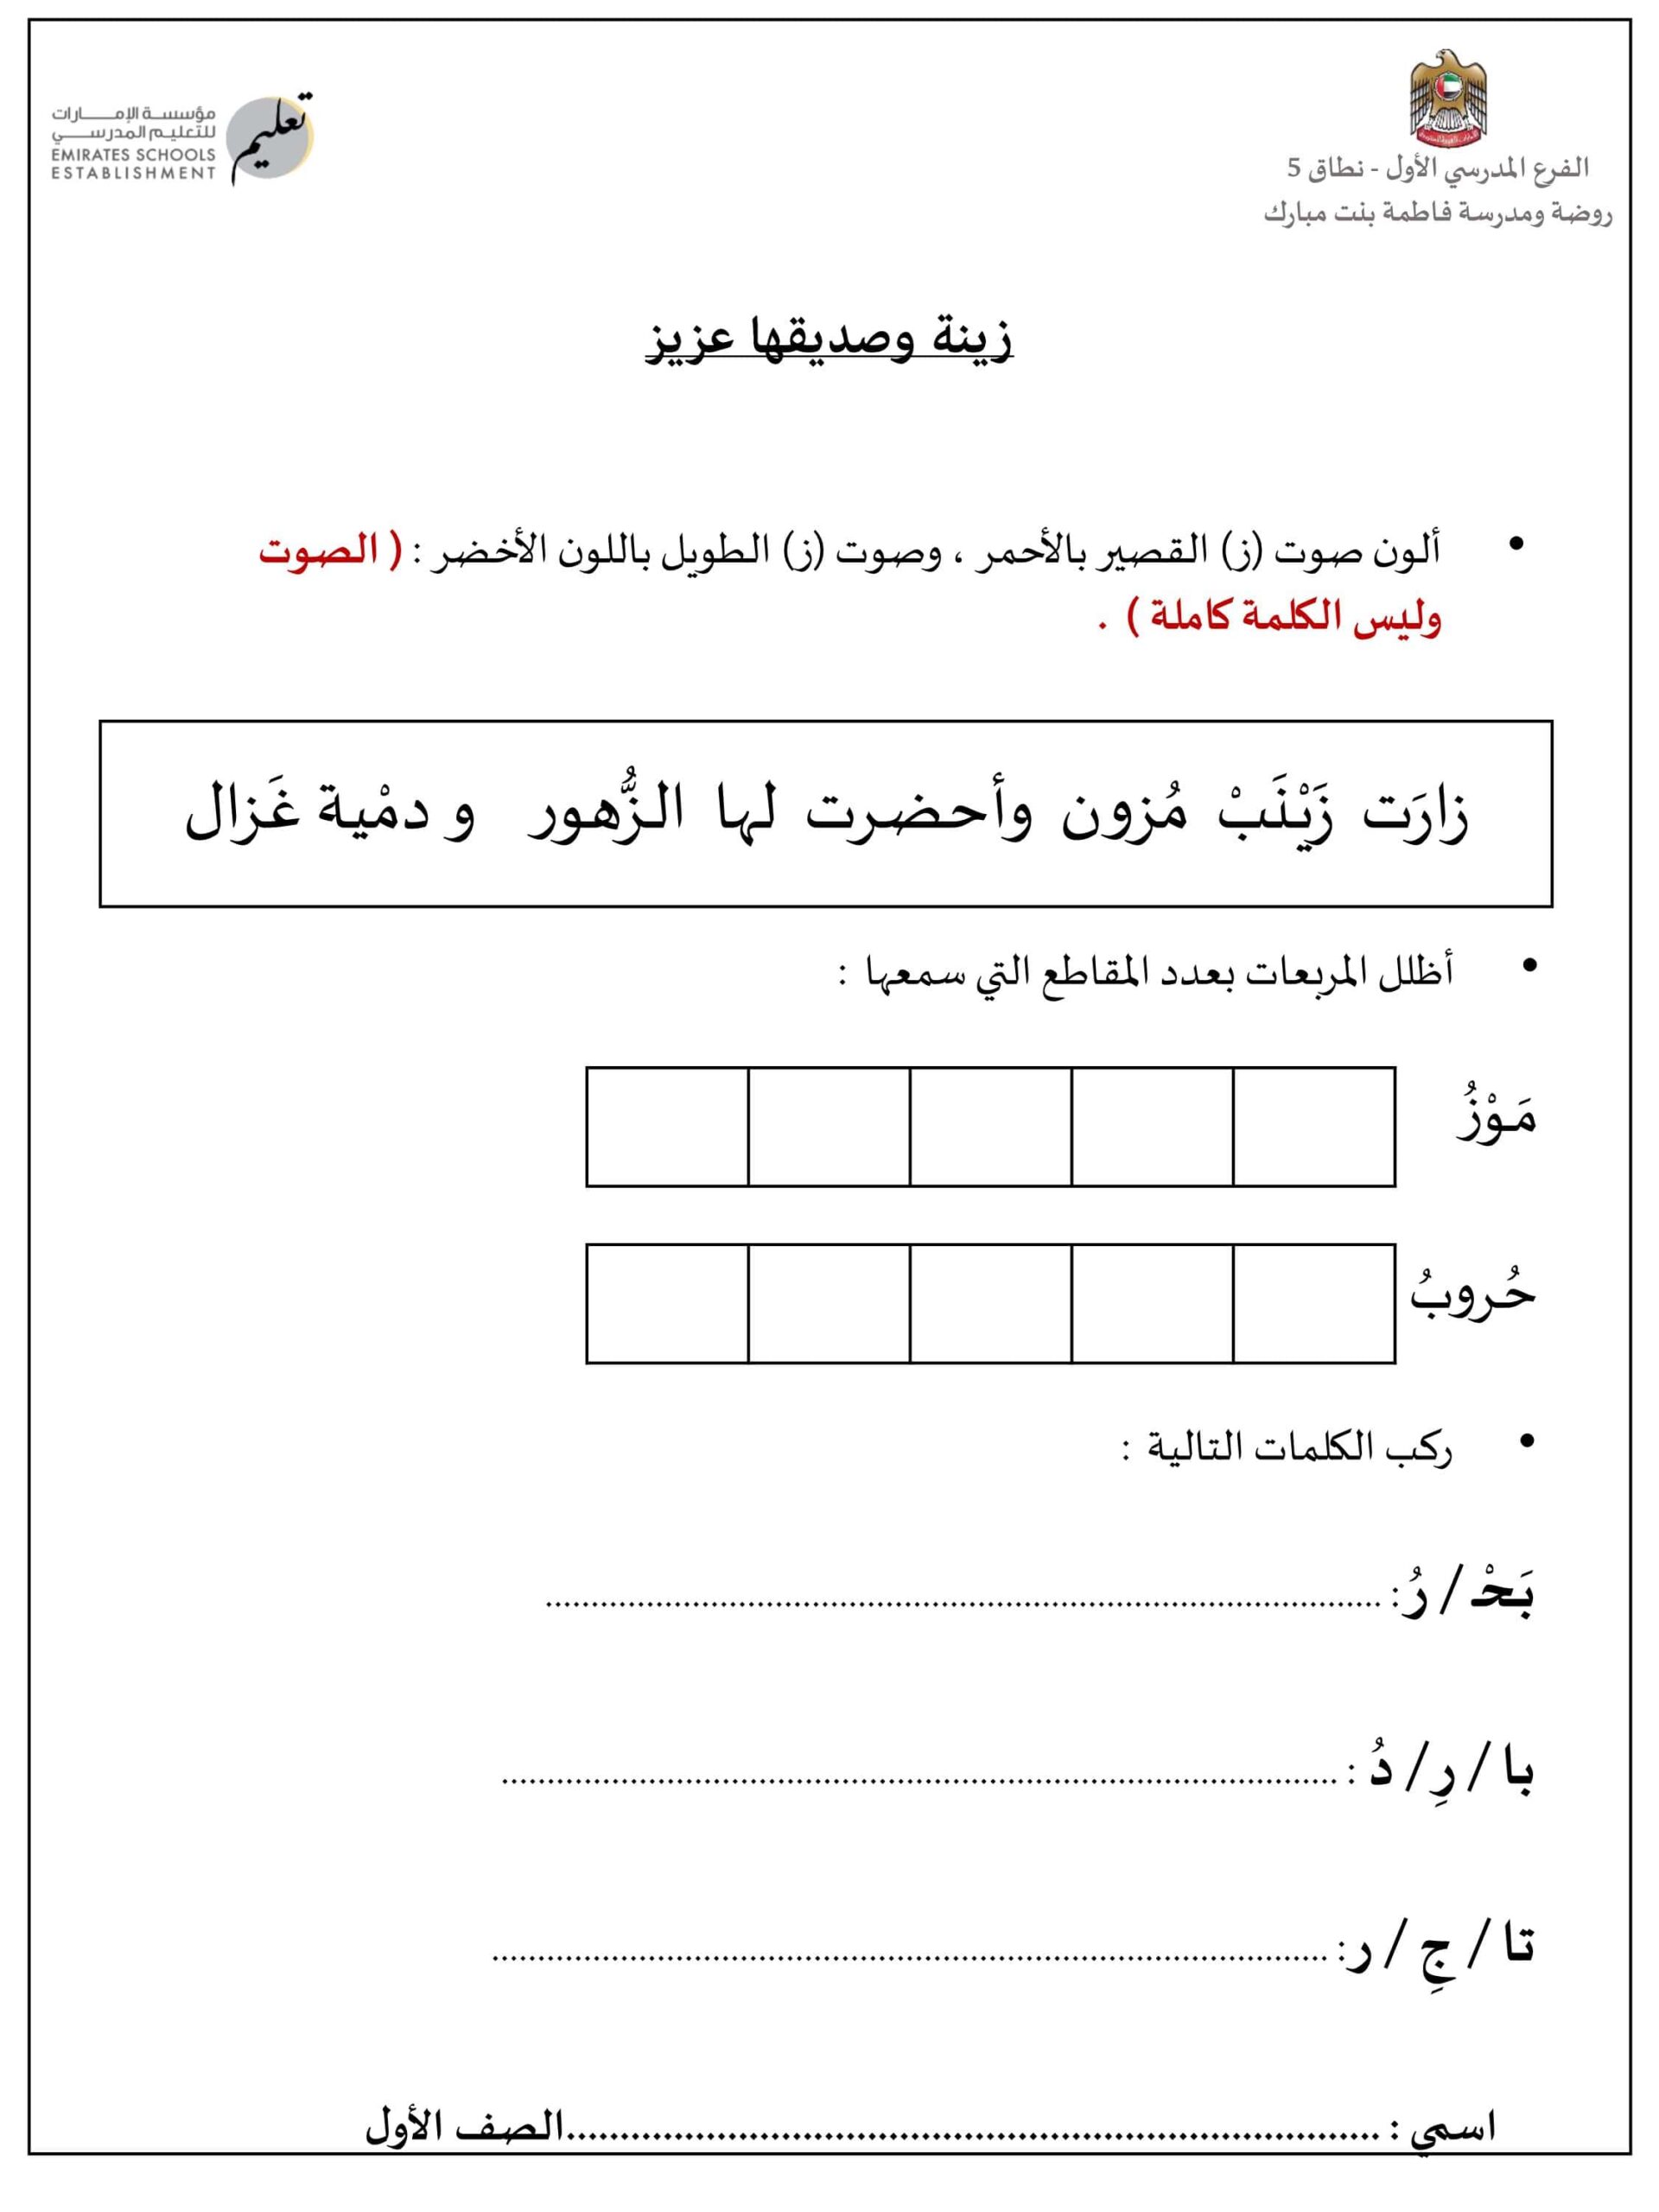 أوراق عمل حرف الزاي والسين اللغة العربية الصف الأول